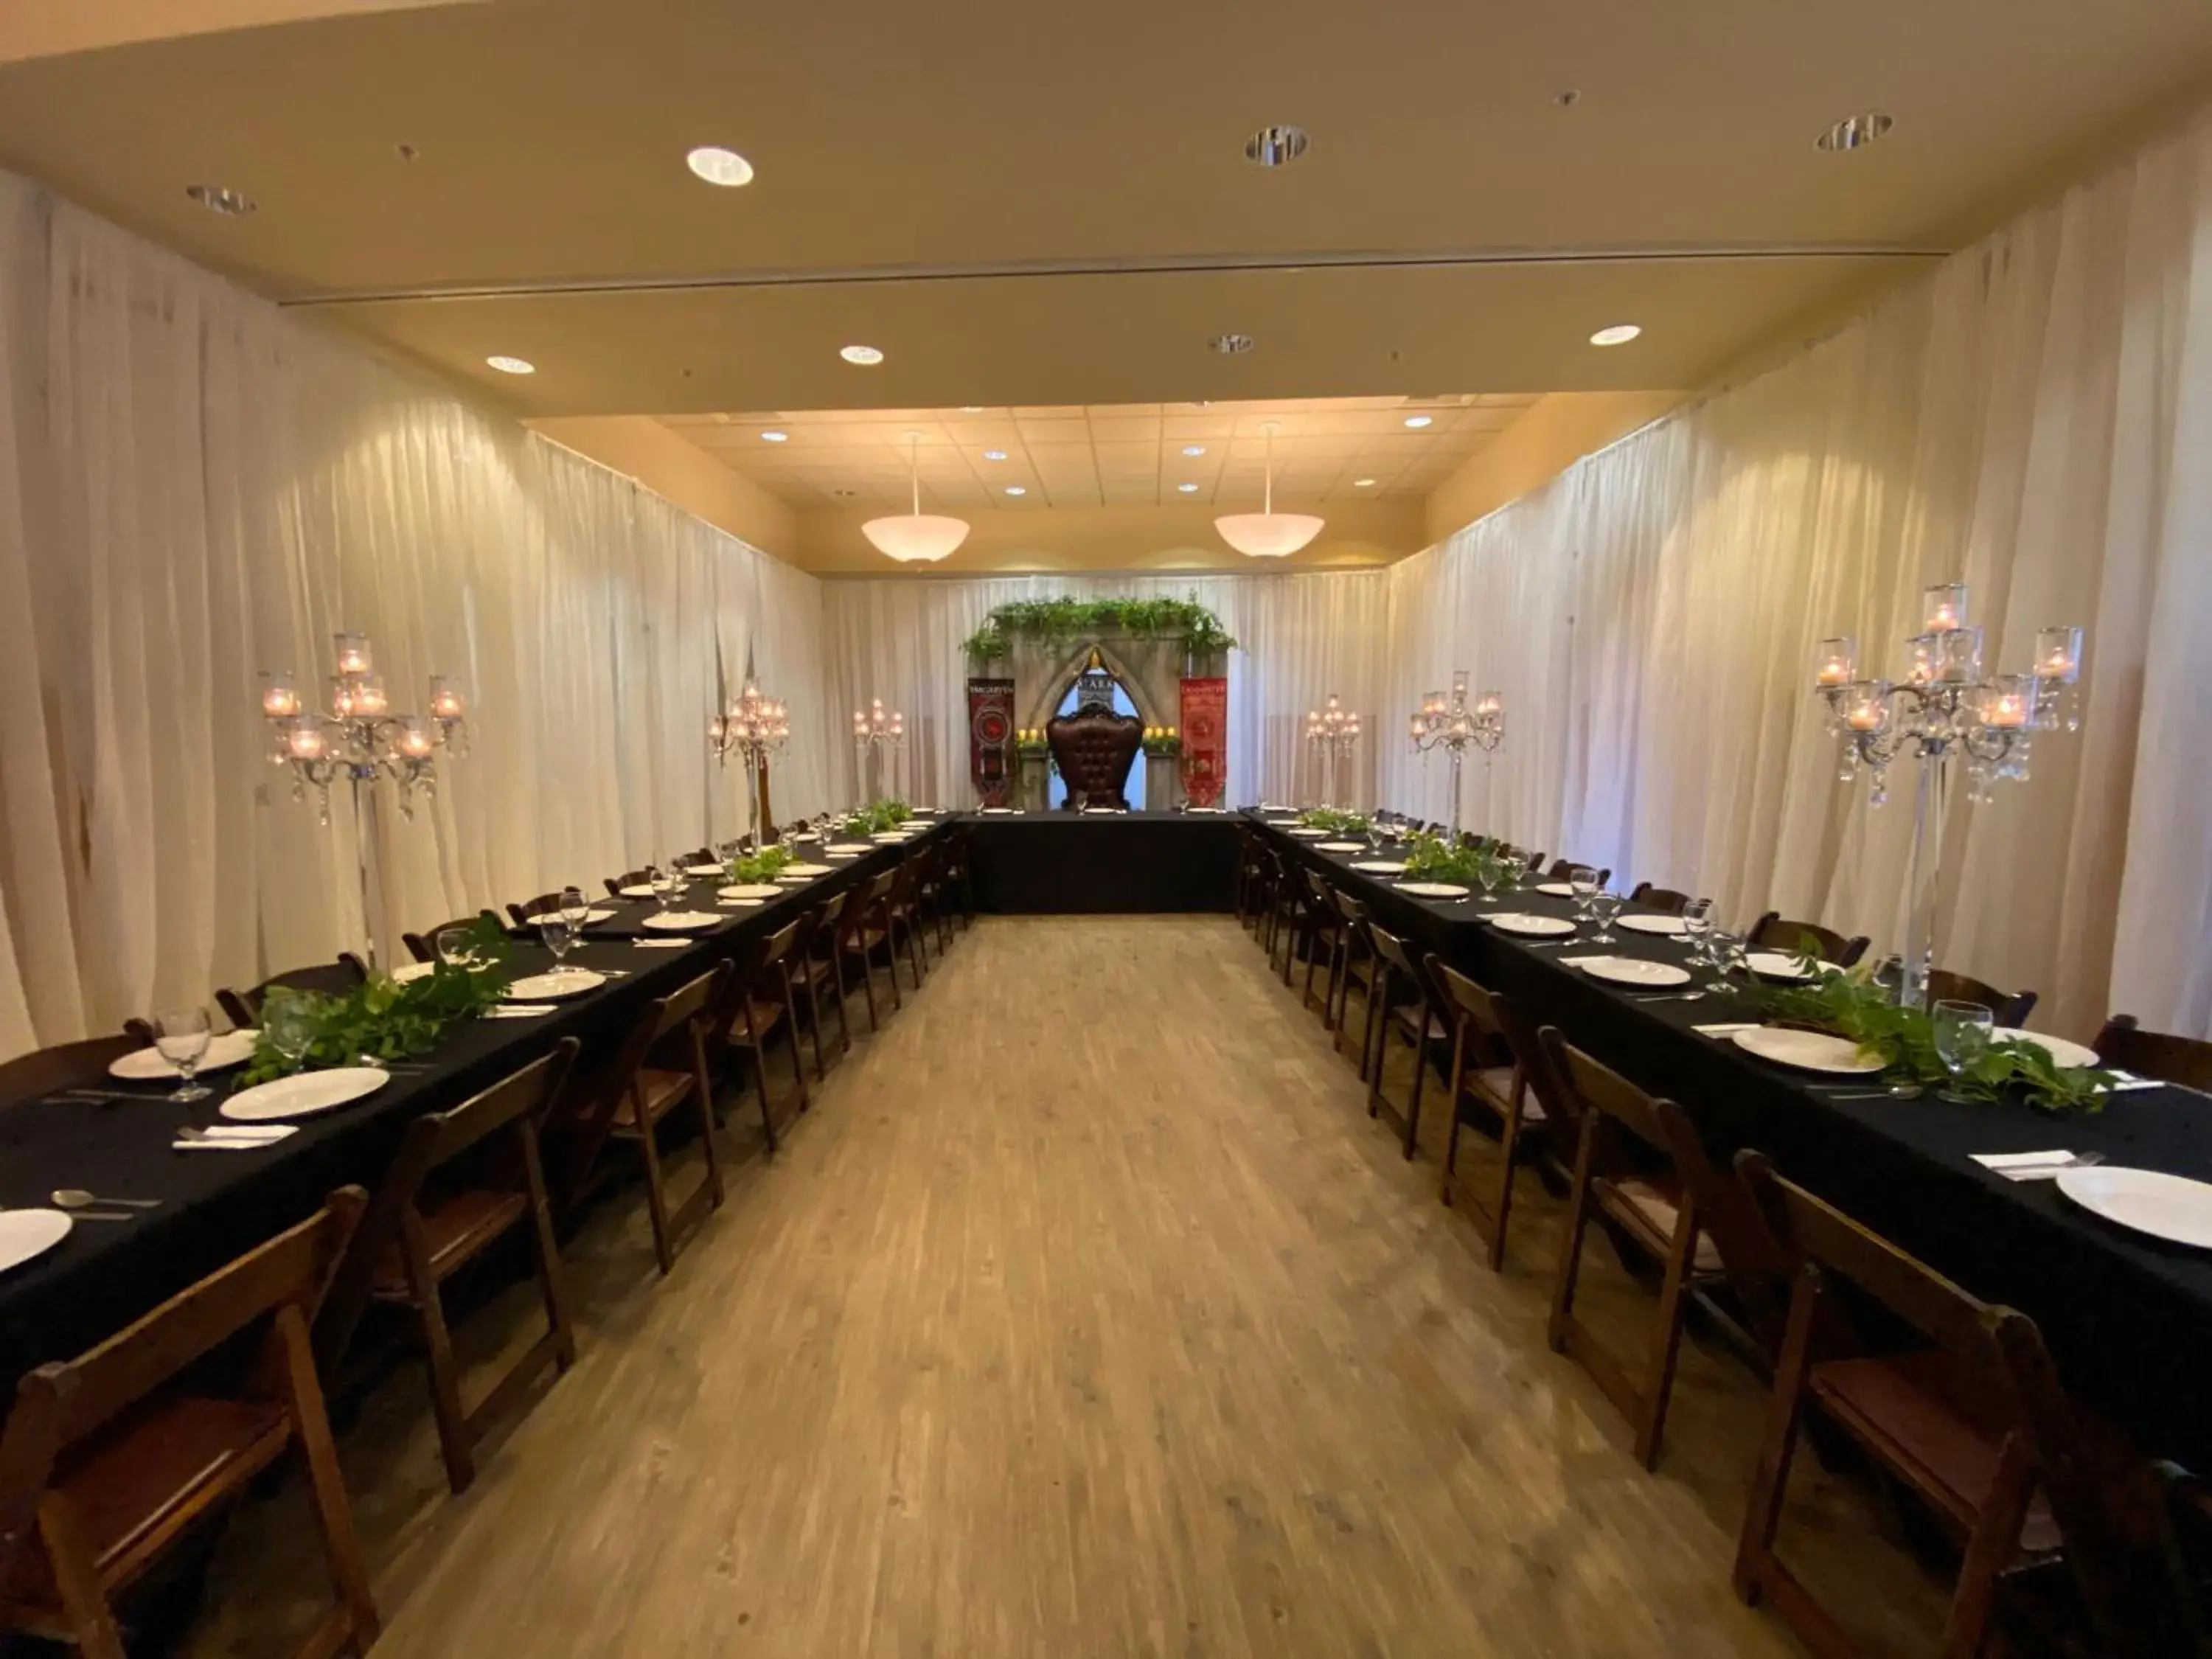 Banquet/Function facilities, Banquet Facilities in Rocklin Park Hotel